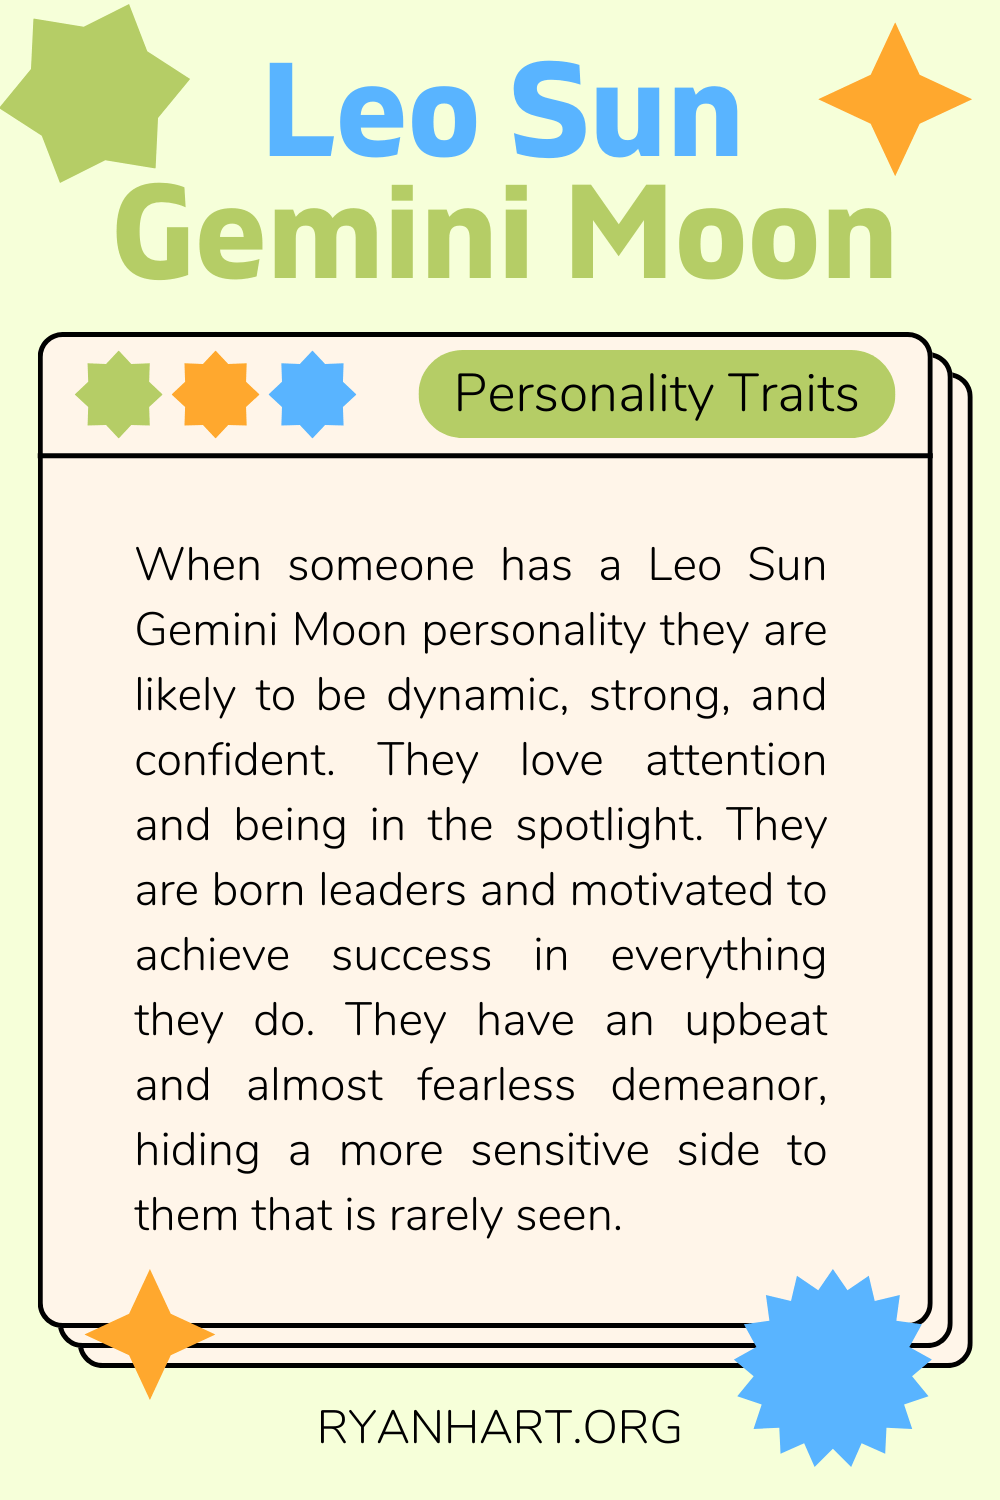 Leo Sun Gemini Moon Description